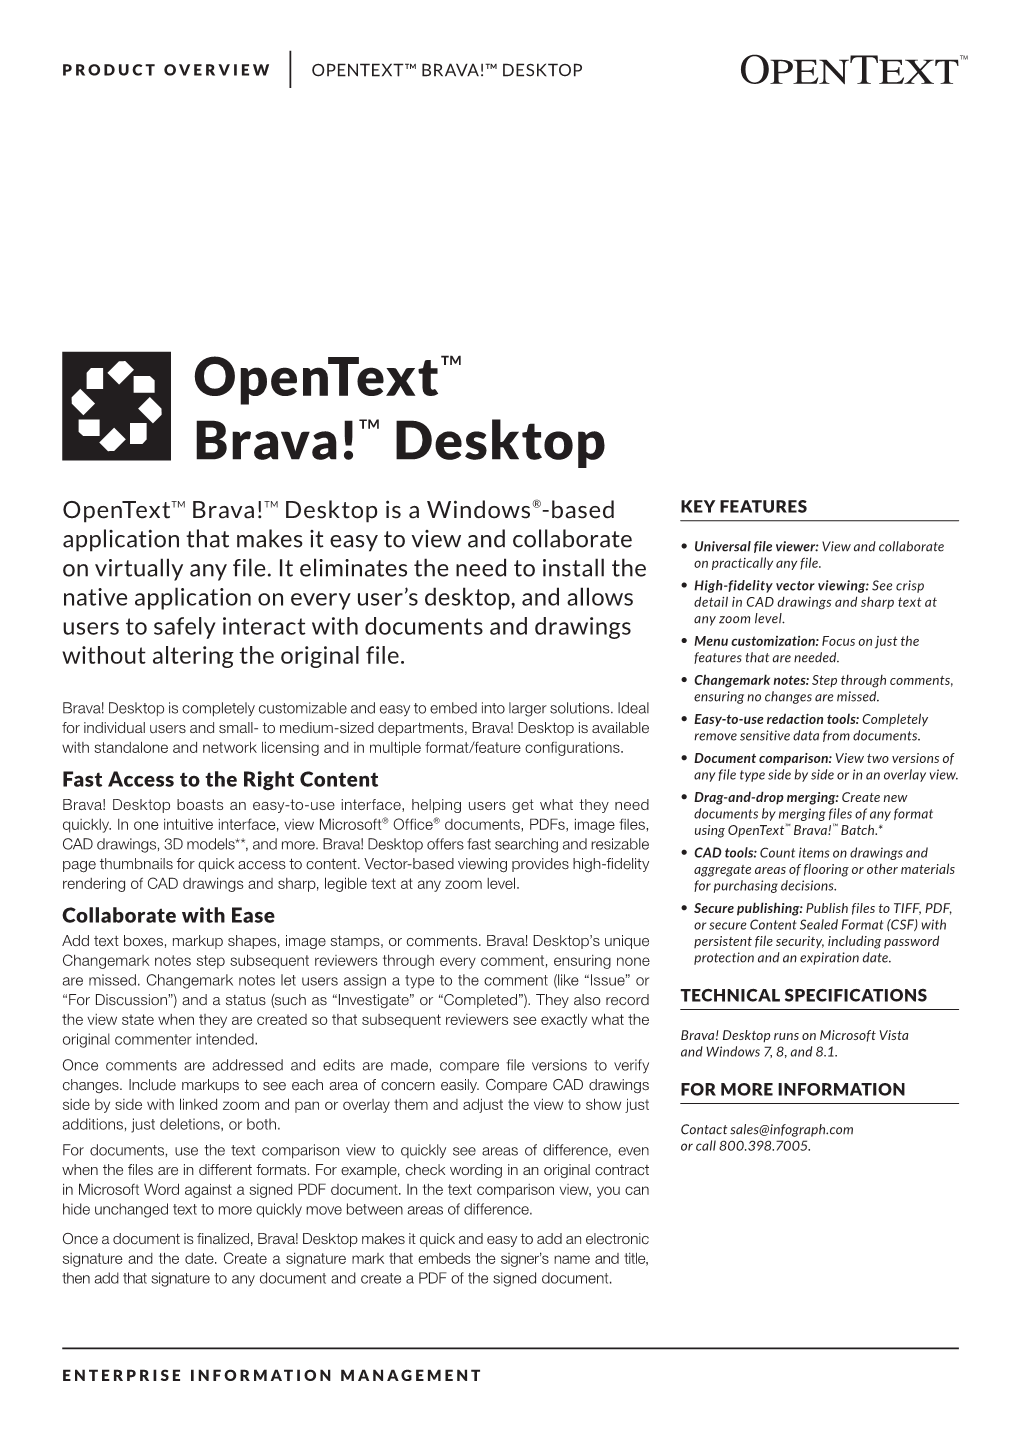 Opentext Brava! Desktop